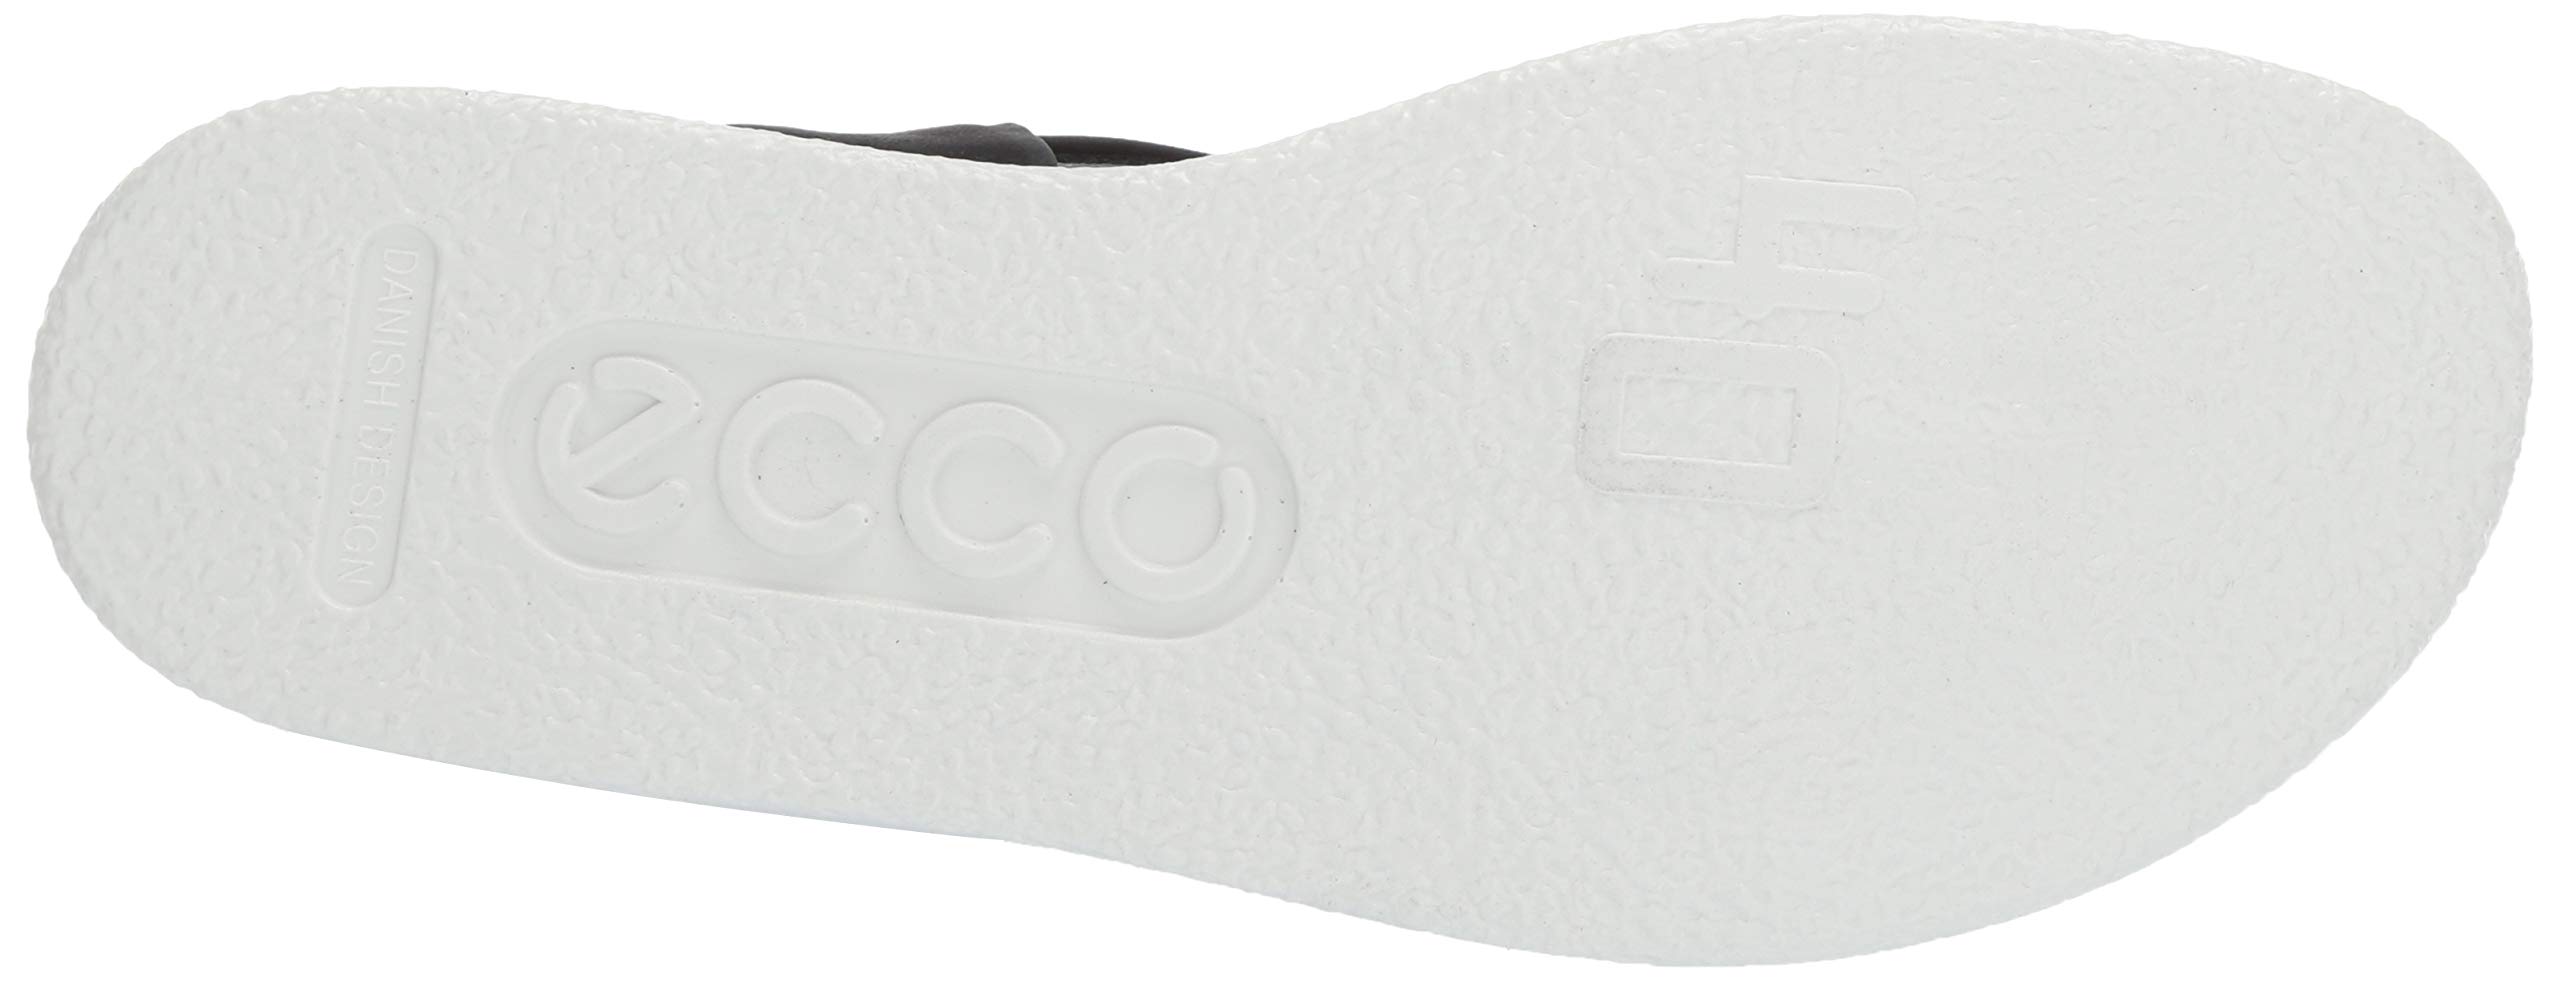 ECCO Women's Flowt Strap Sandal